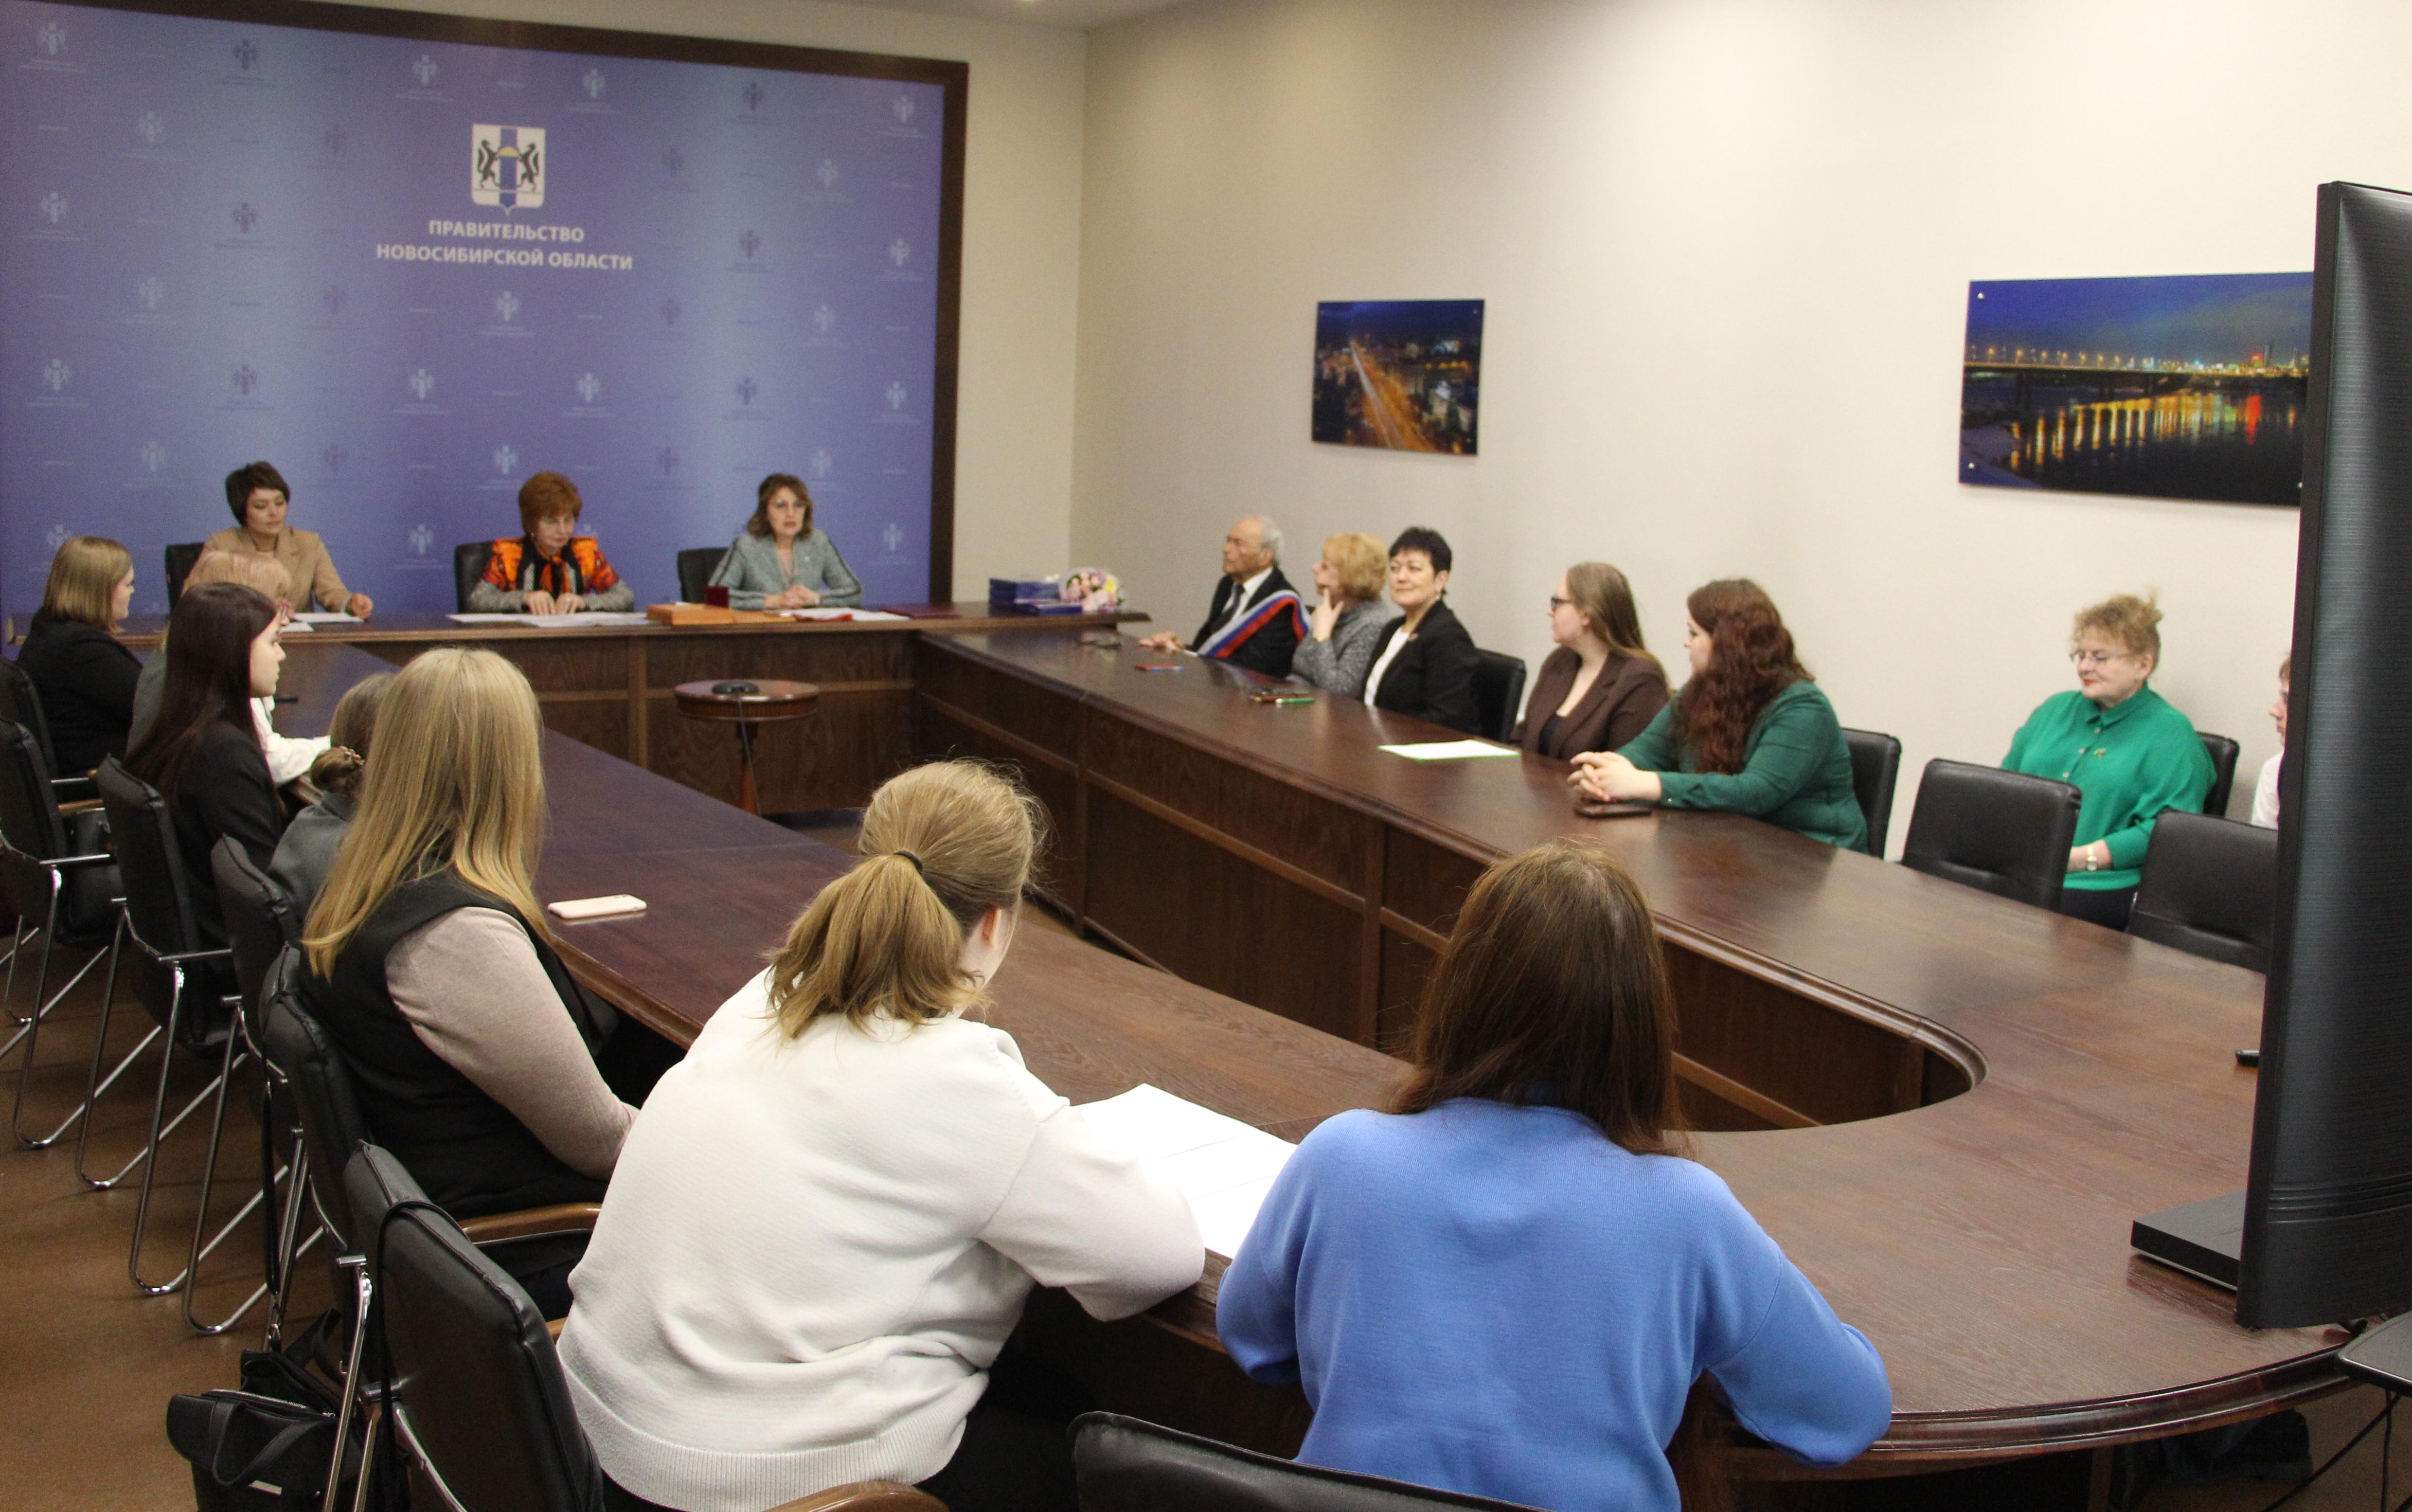 ФОТО к новости: Сохранение исторической памяти обсудили в Правительстве Новосибирской области 